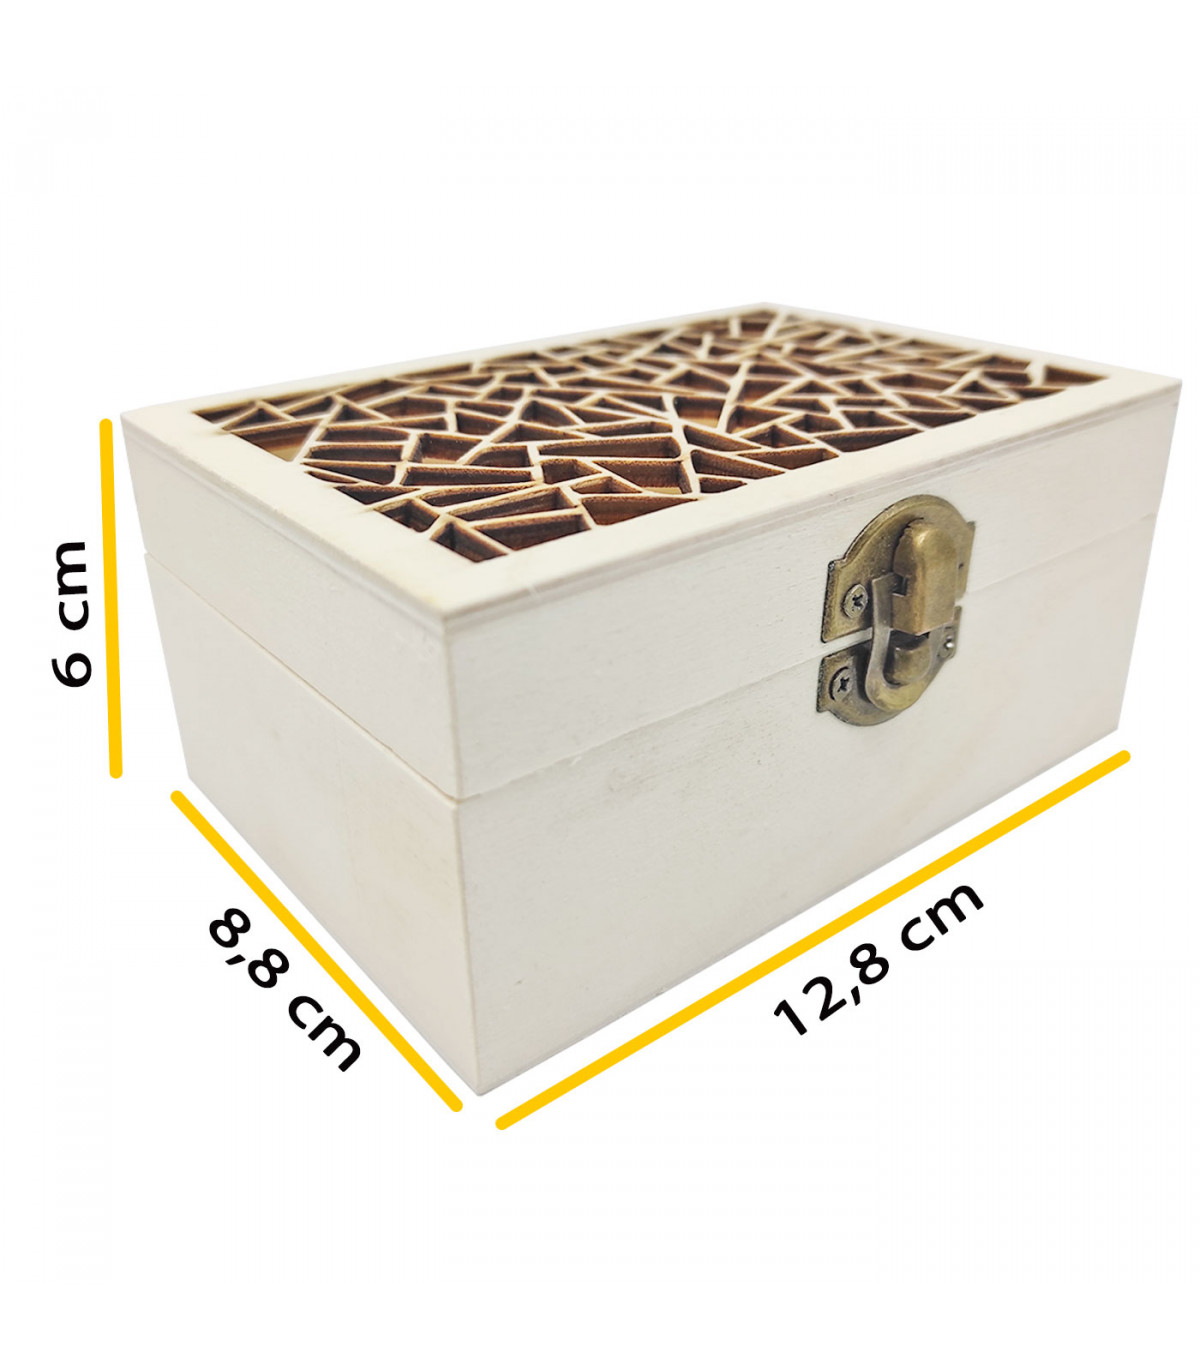 Caja Con Tapa Natural 6 X 6 Cm